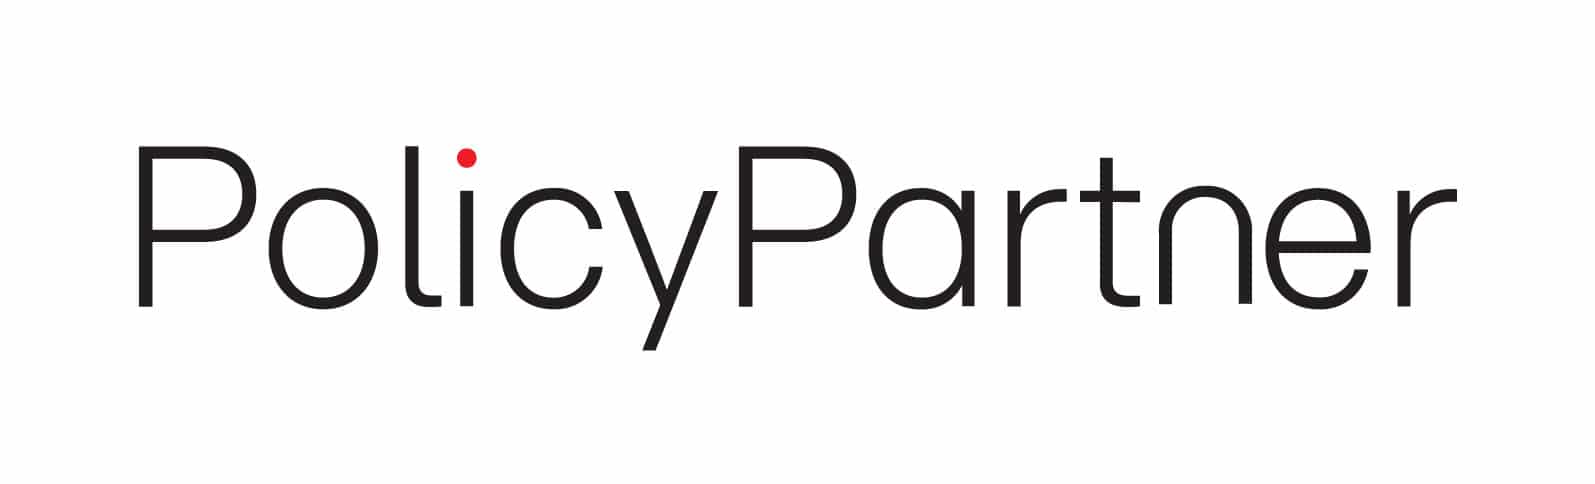 PolicyPartner - Logo (1)